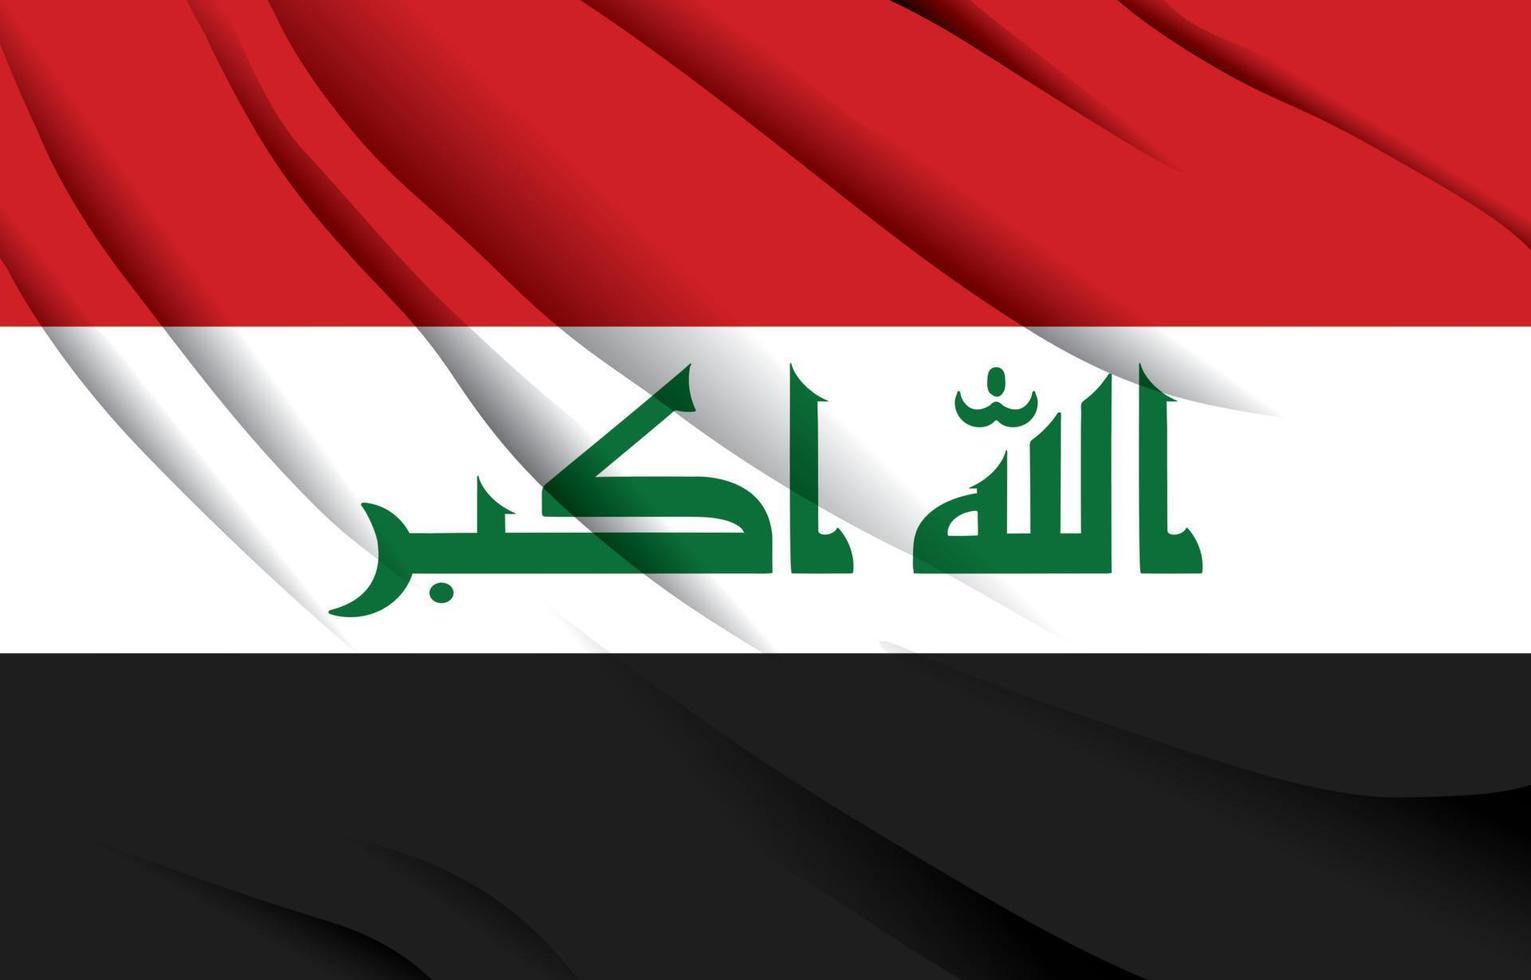 drapeau national irakien agitant une illustration vectorielle réaliste vecteur